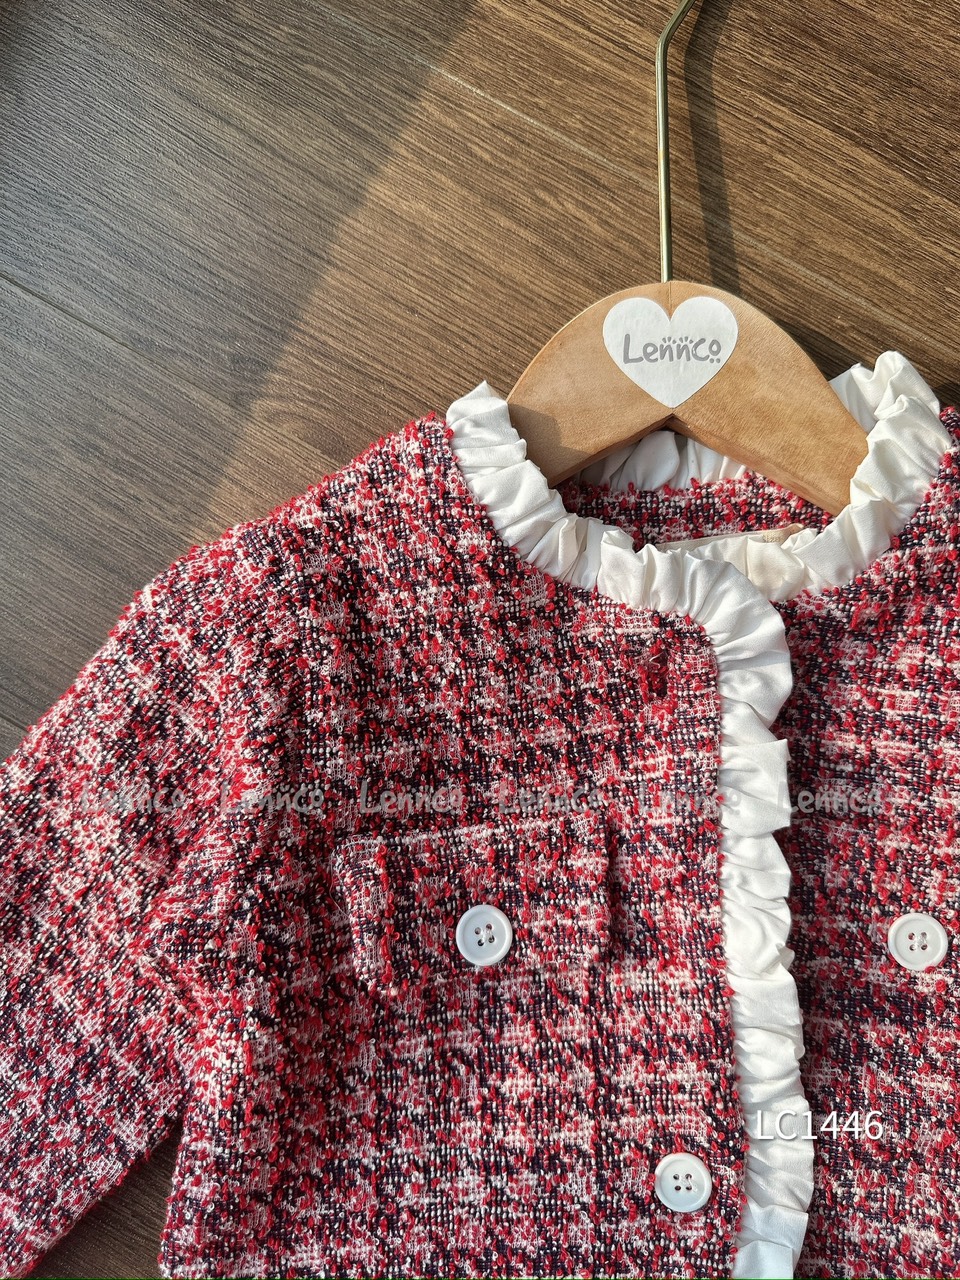 Set Lennco áo khoác + chân váy dạ tweed đỏ phối trắng size 1 - 10y